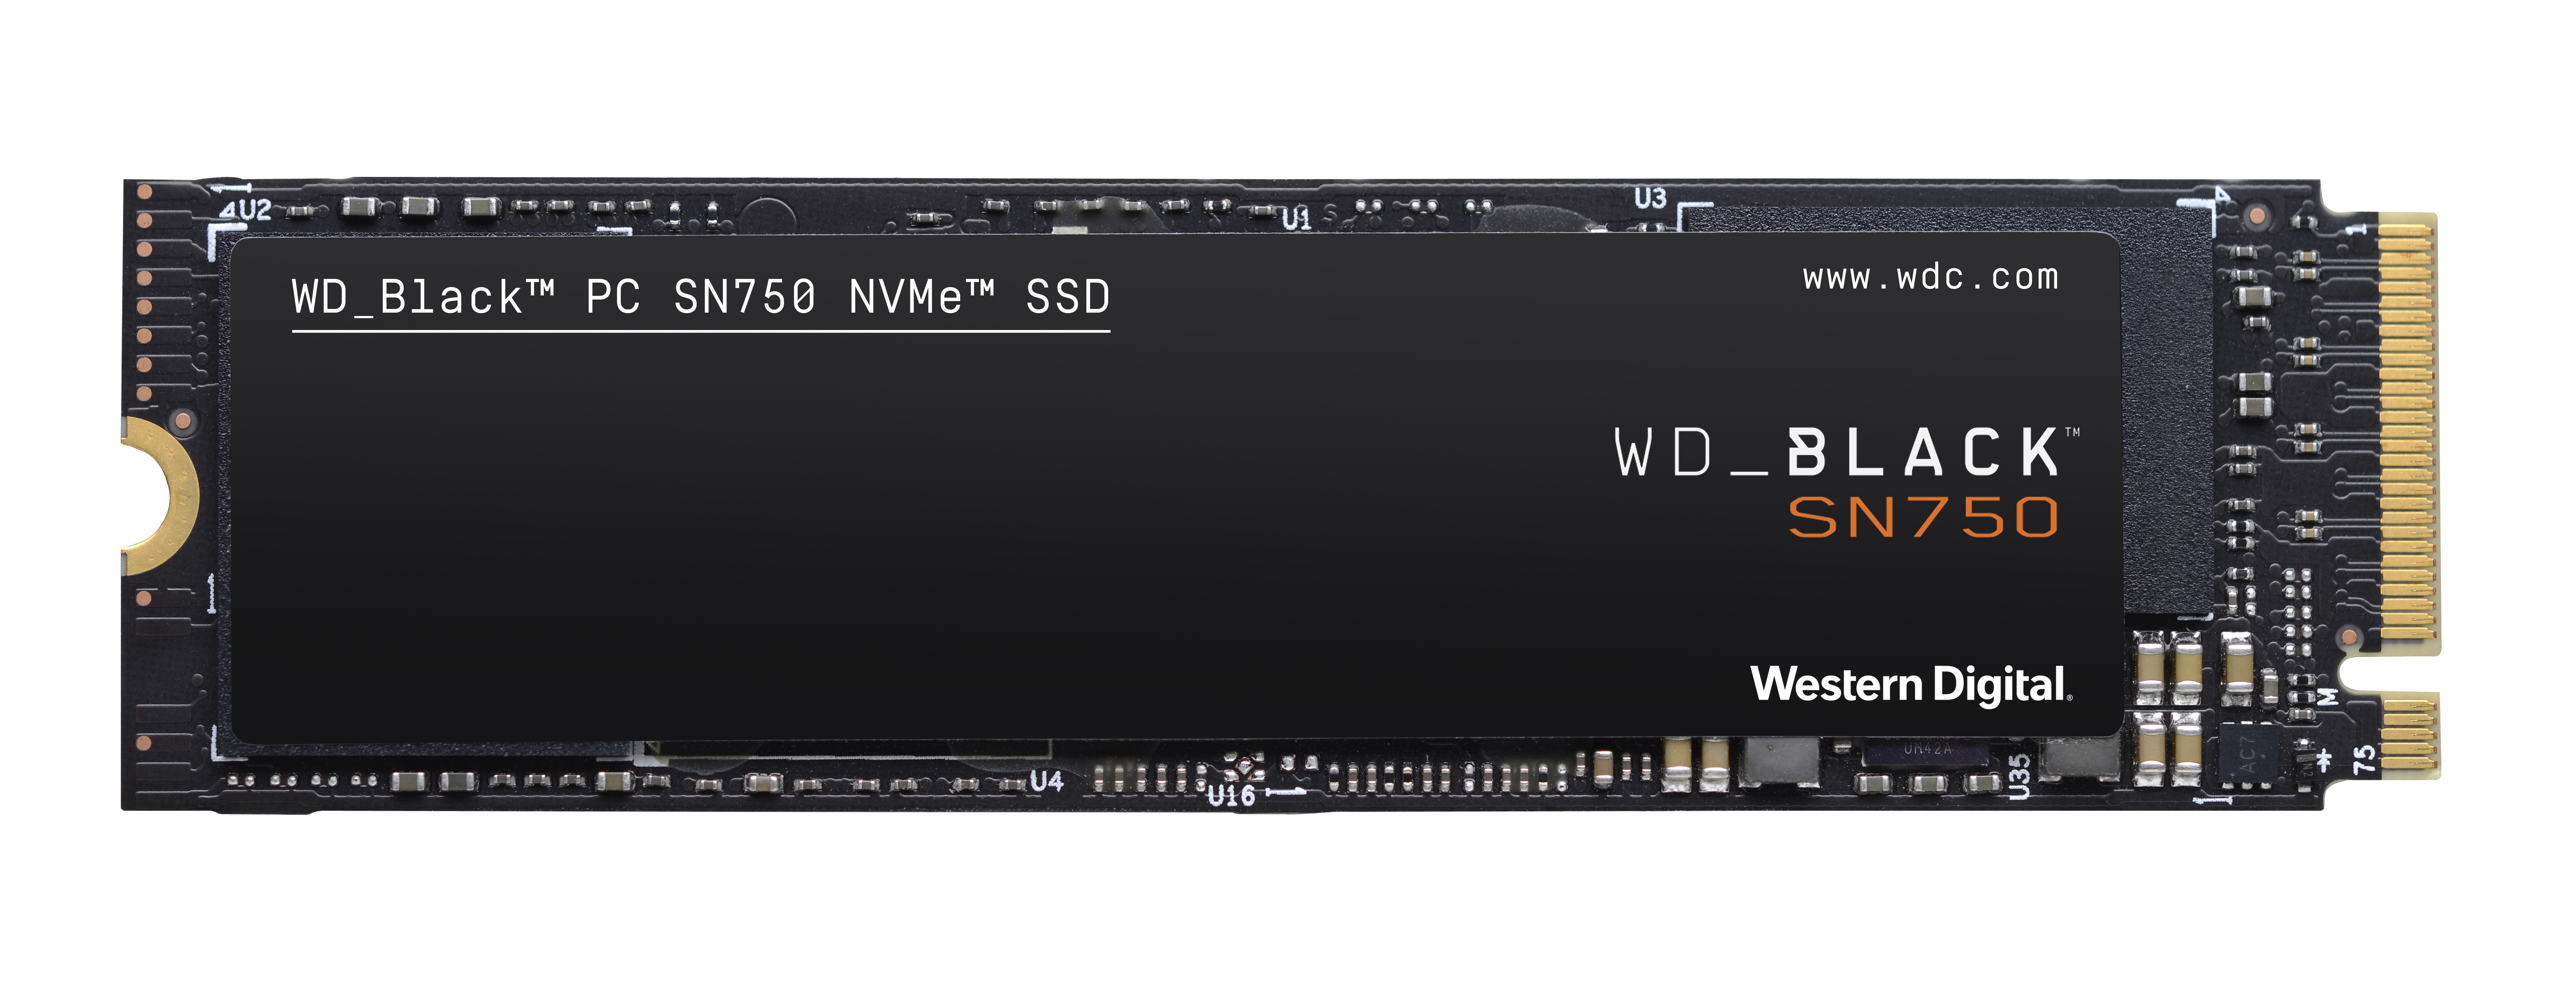 WD_BLACK SN750 NVMe™ Speicher, 250 Interner SSD, GB Speicher M.2, intern